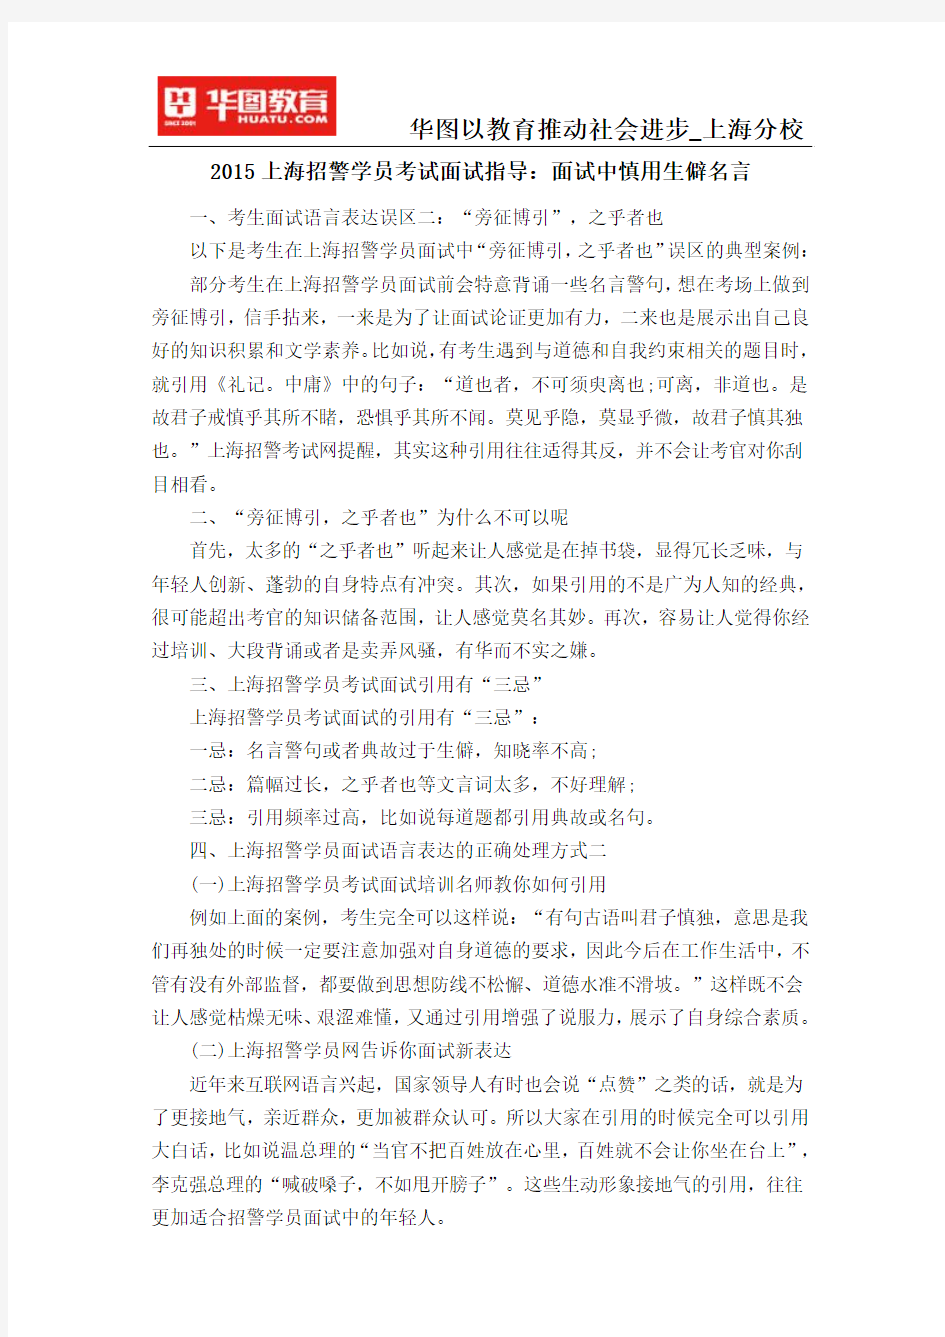 2015上海招警学员考试面试指导：面试中慎用生僻名言